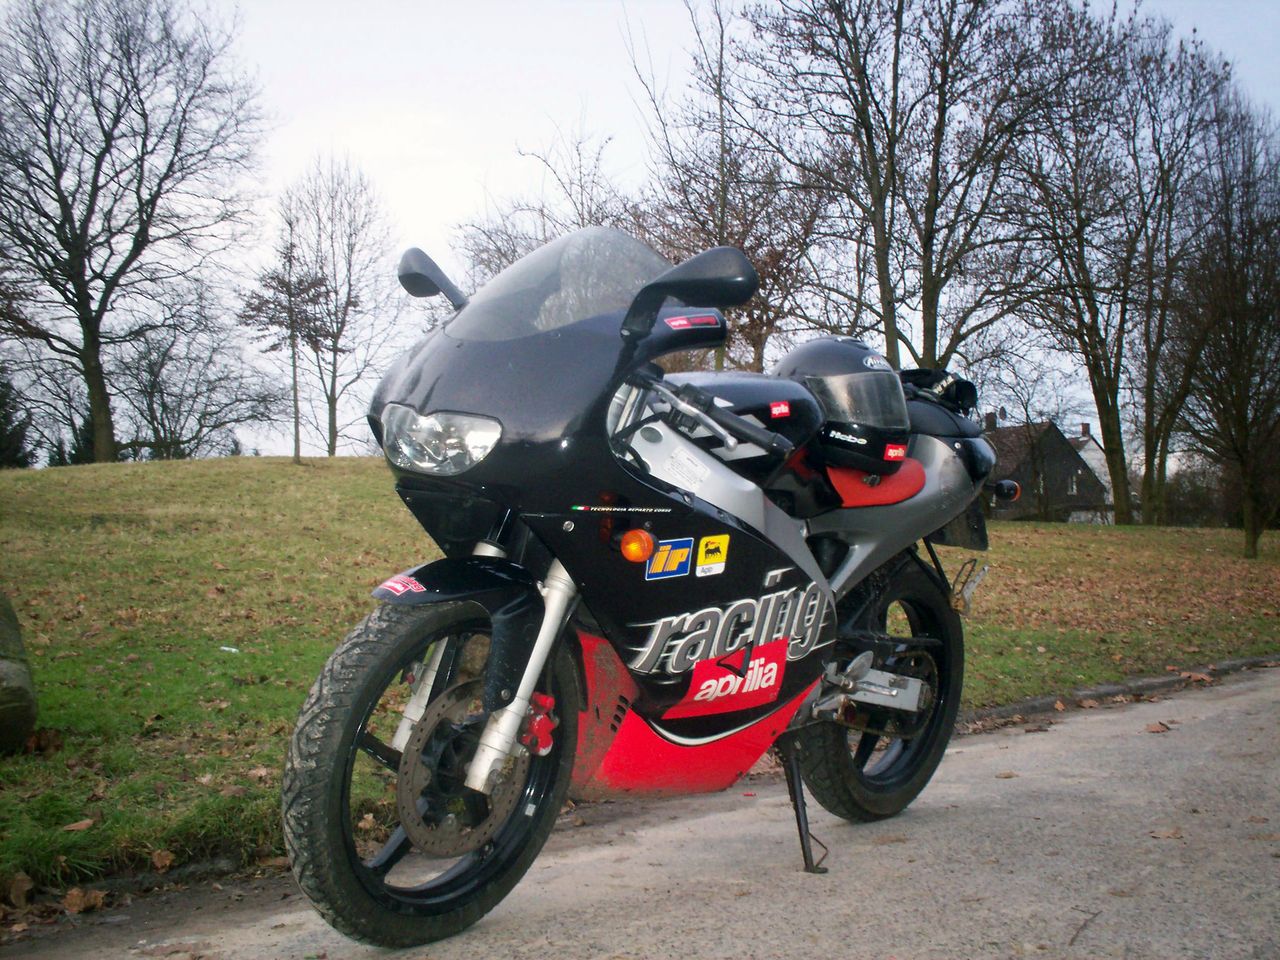 Popularny włoski motorower Aprilia RS50 stylizowany na sportowy motocykl. Dwusuwowa jednostka jest podatna na tuning, co pozwala na łatwe zwiększenie osiągów tego jednośladu, dzięki czemu pod względem szybkości i przyspieszenia staje się porównywalny z wieloma motocyklami o pojemności 125 cm3.